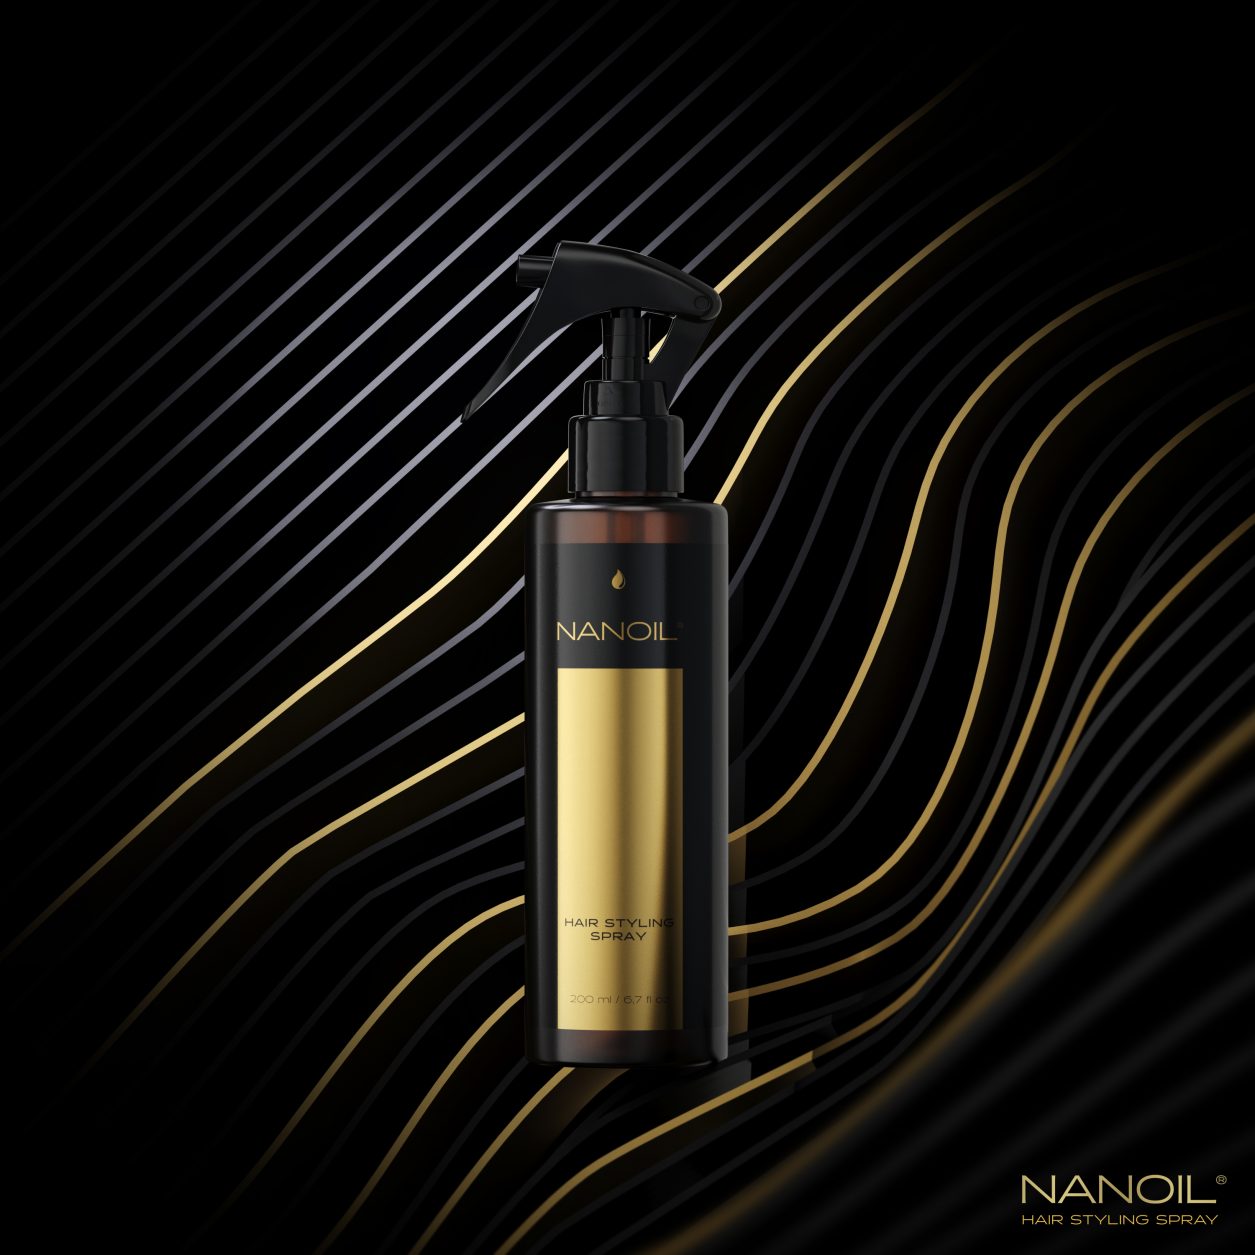 polecany spray do stylizacji włosów Nanoil